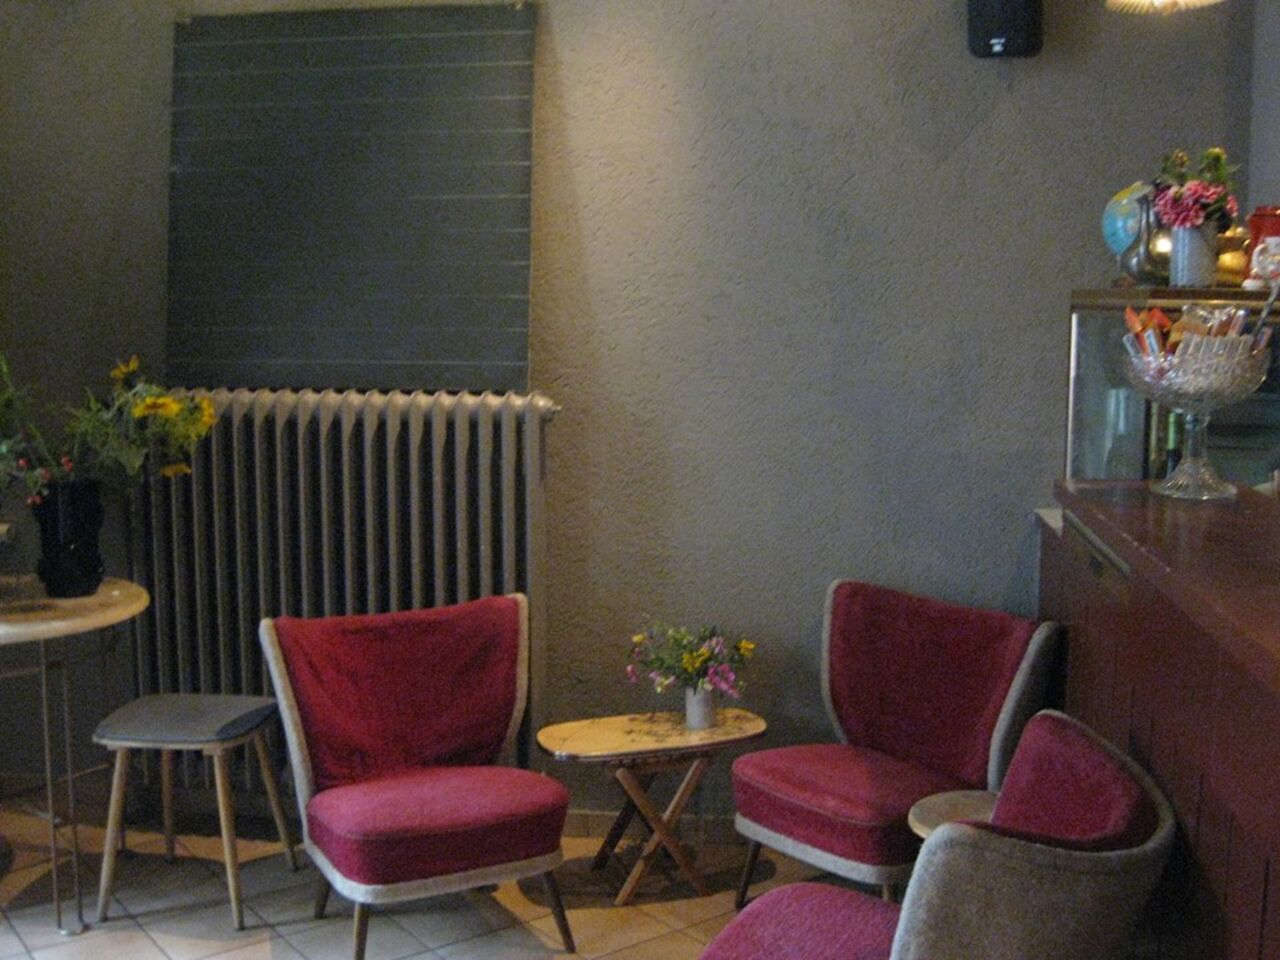 A photo of Café Rost